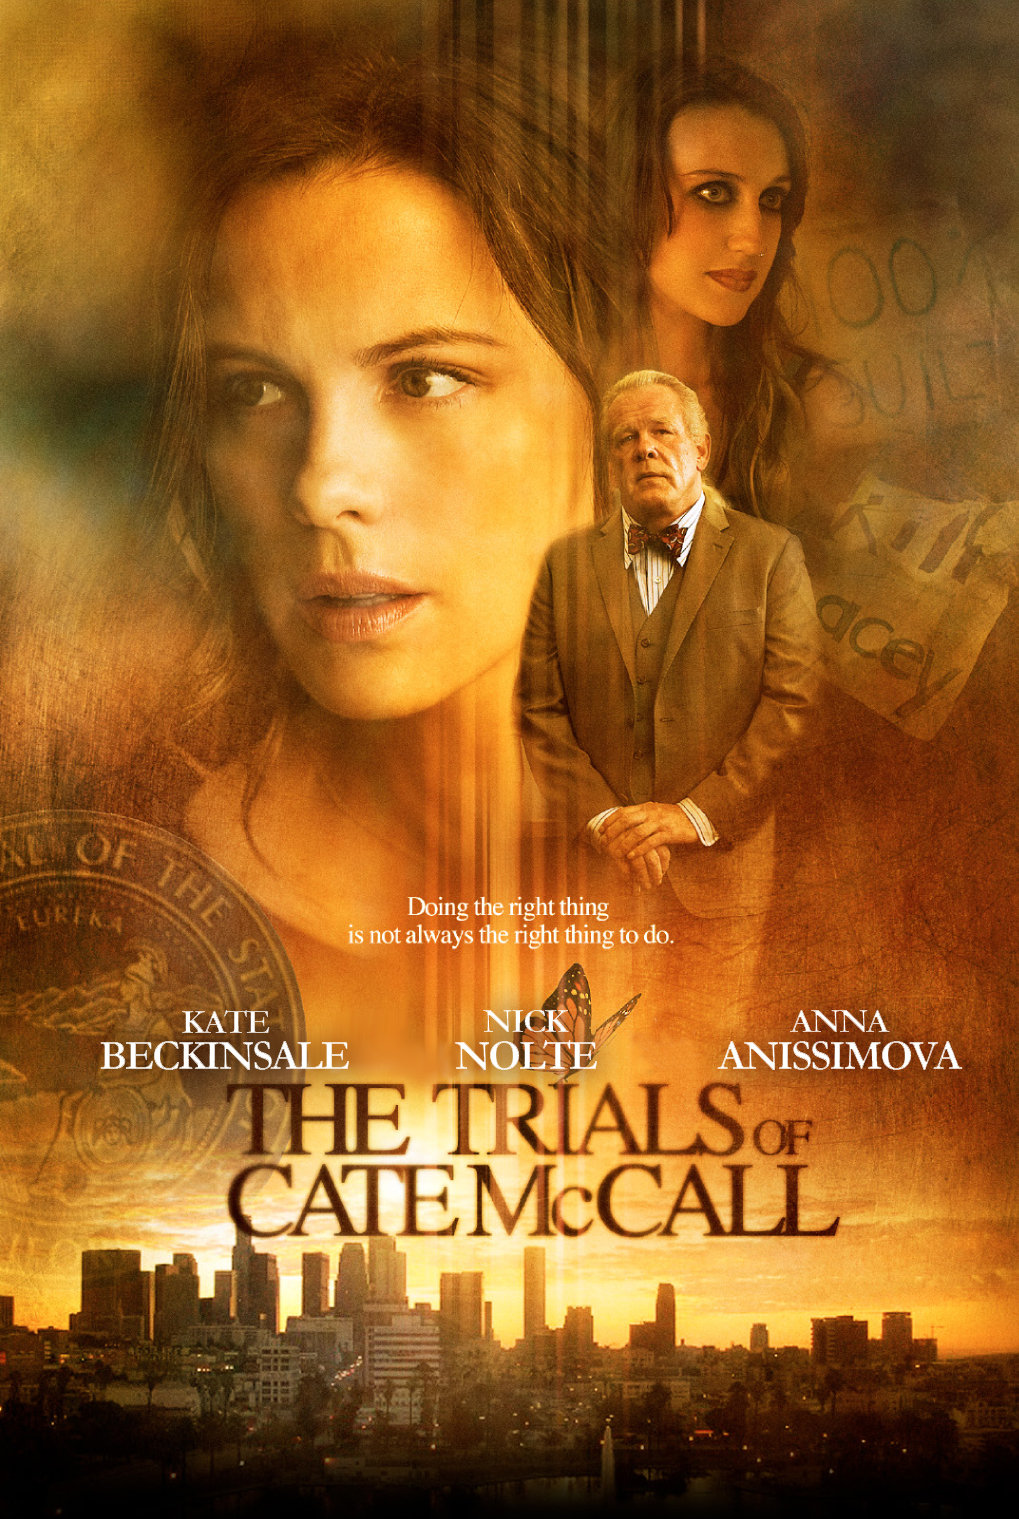 ดูหนังออนไลน์ฟรี The Trials of Cate McCall | พลิกคดีล่าลวงโลก (2013)